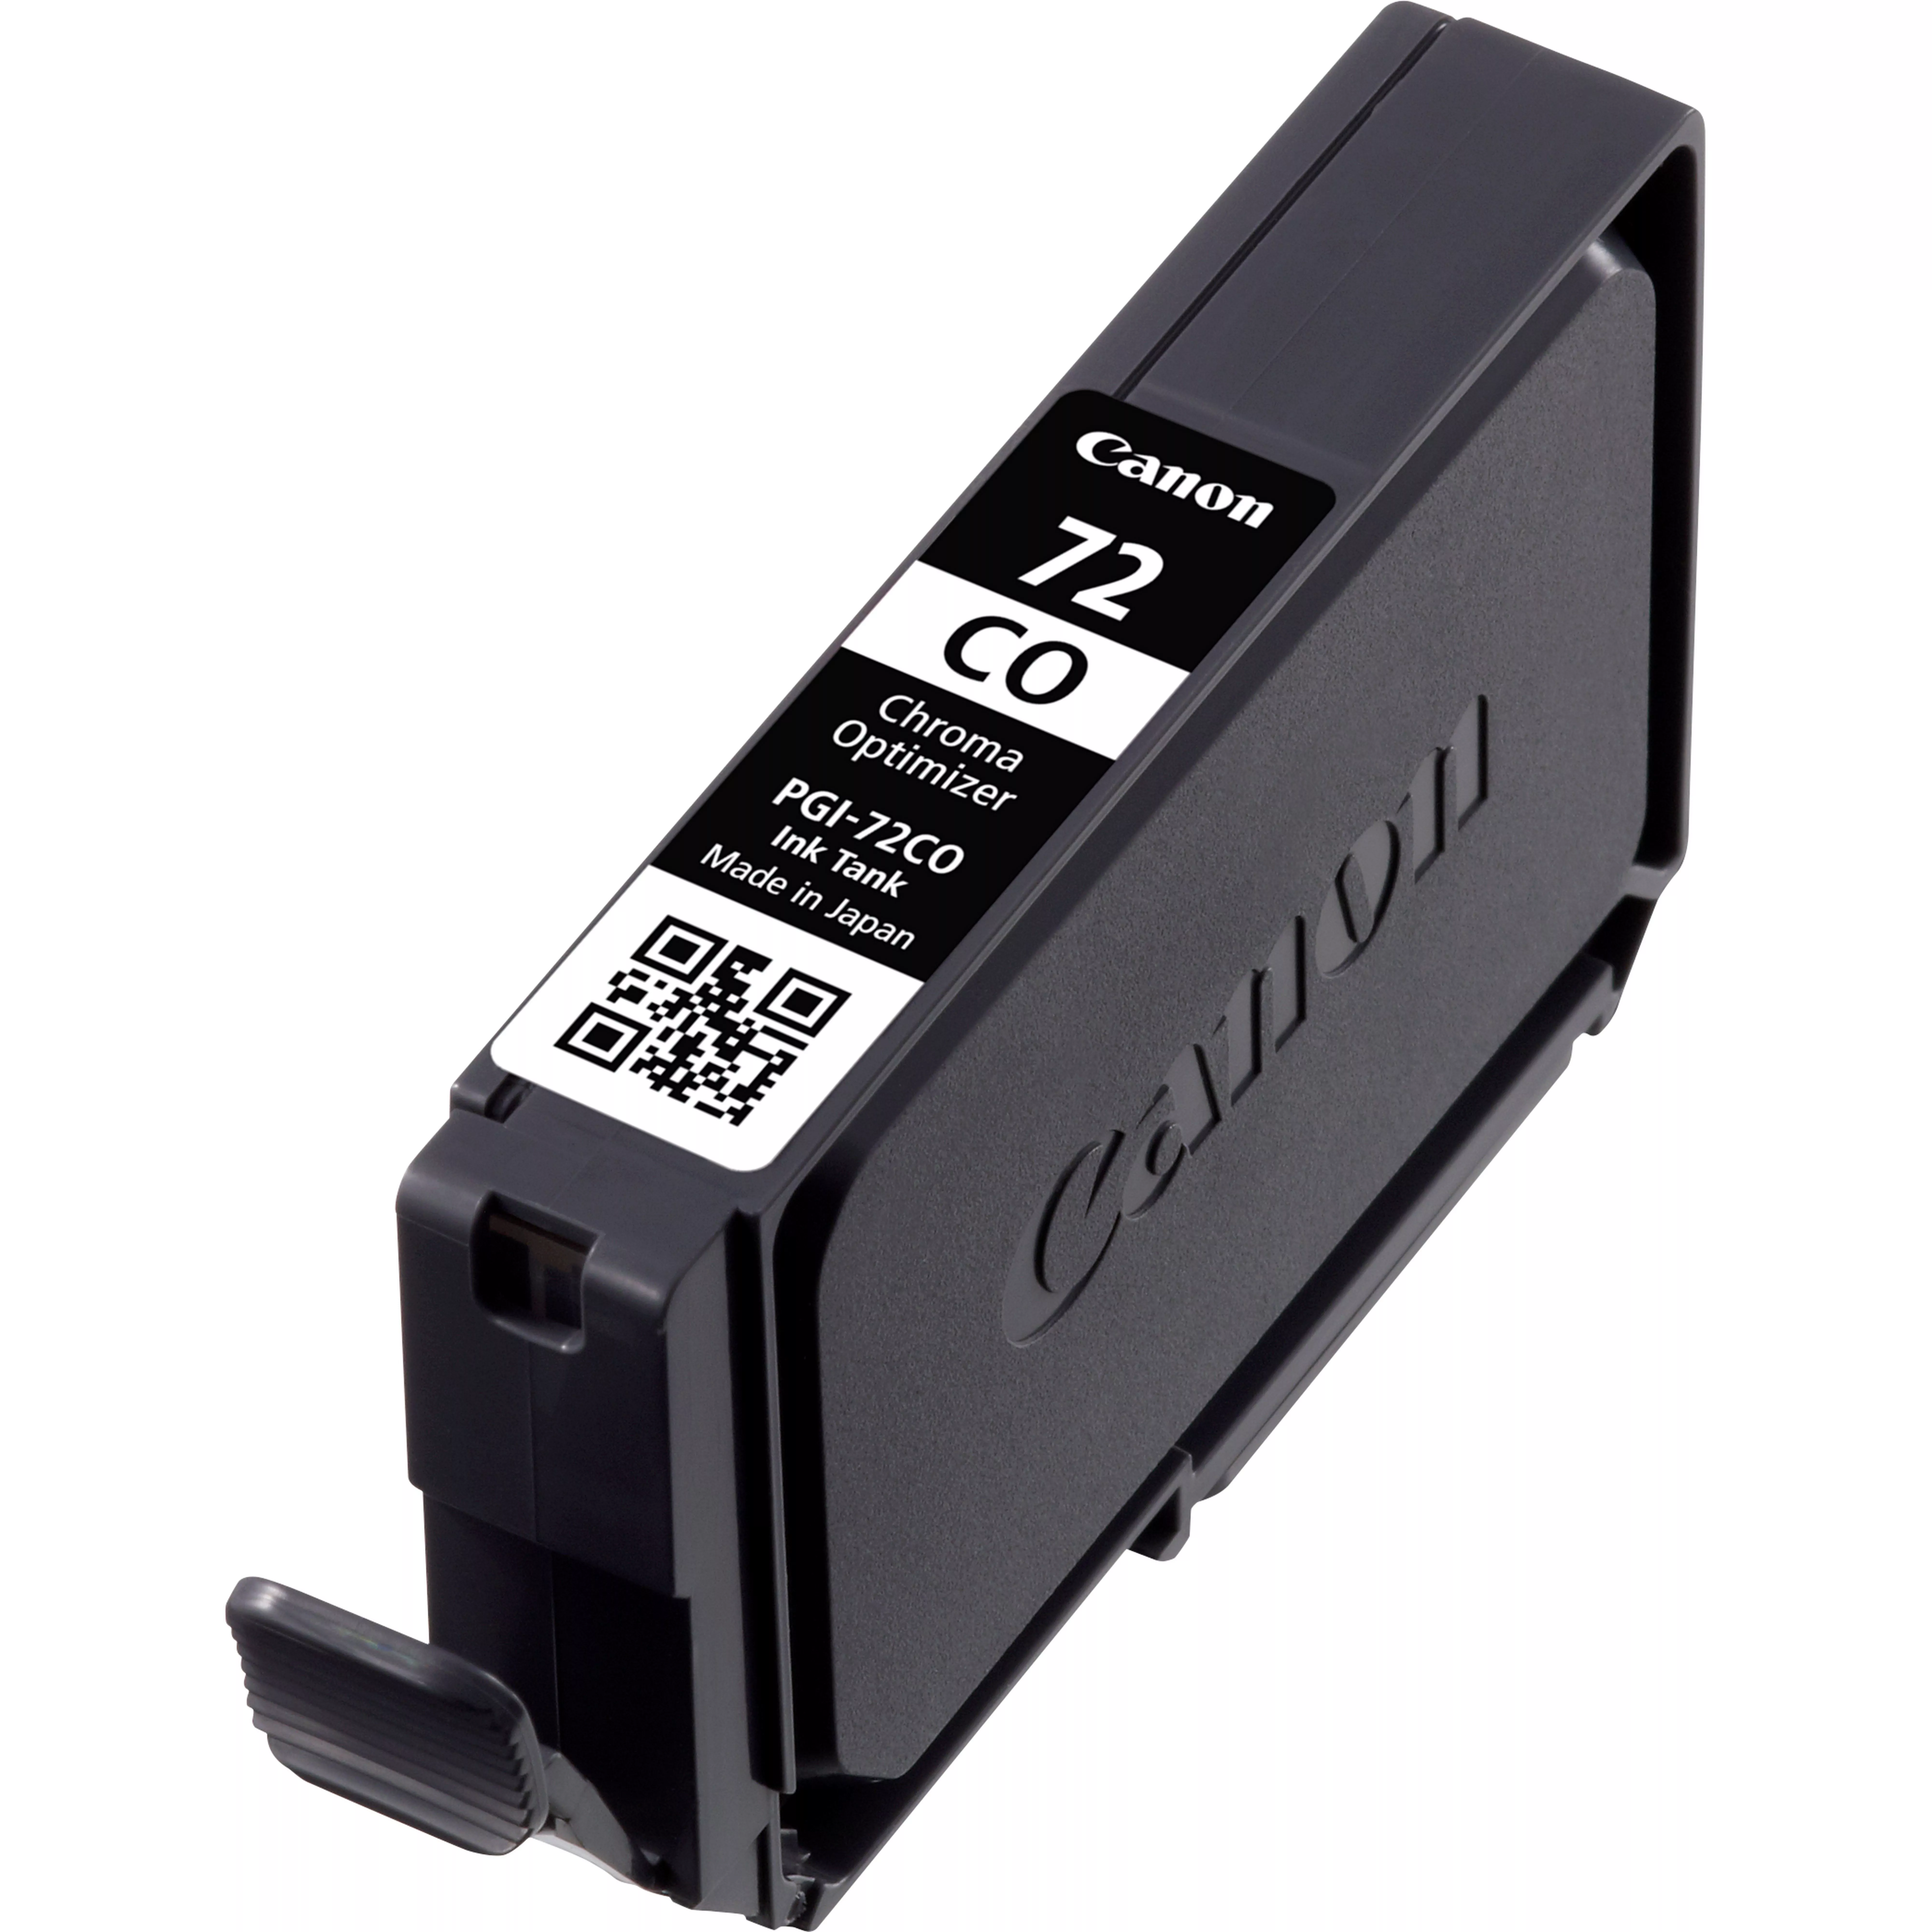 Achat CANON 1LB PGI-72 CO ink cartridge chroma optimiser tank au meilleur prix